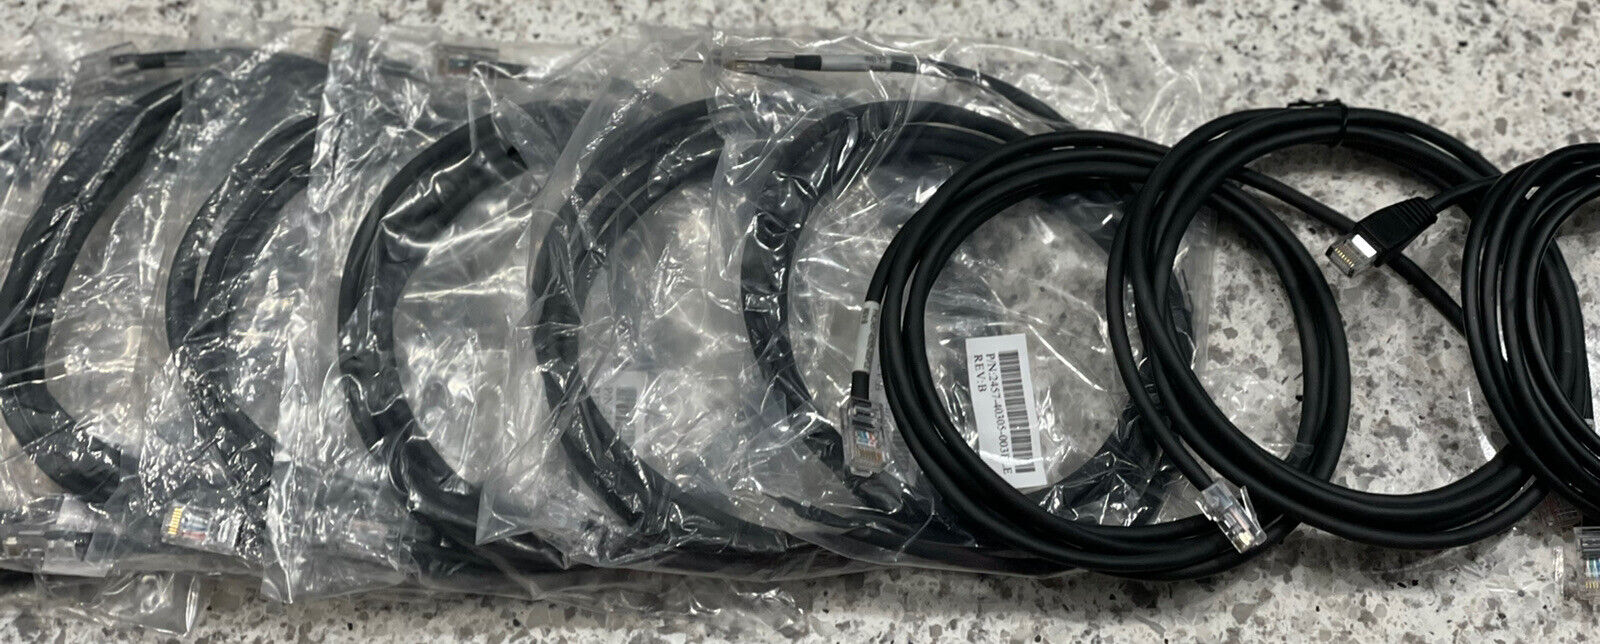 Lot of 9 Polycom 2457-40305-003PLE 8FT CAT5e Cable